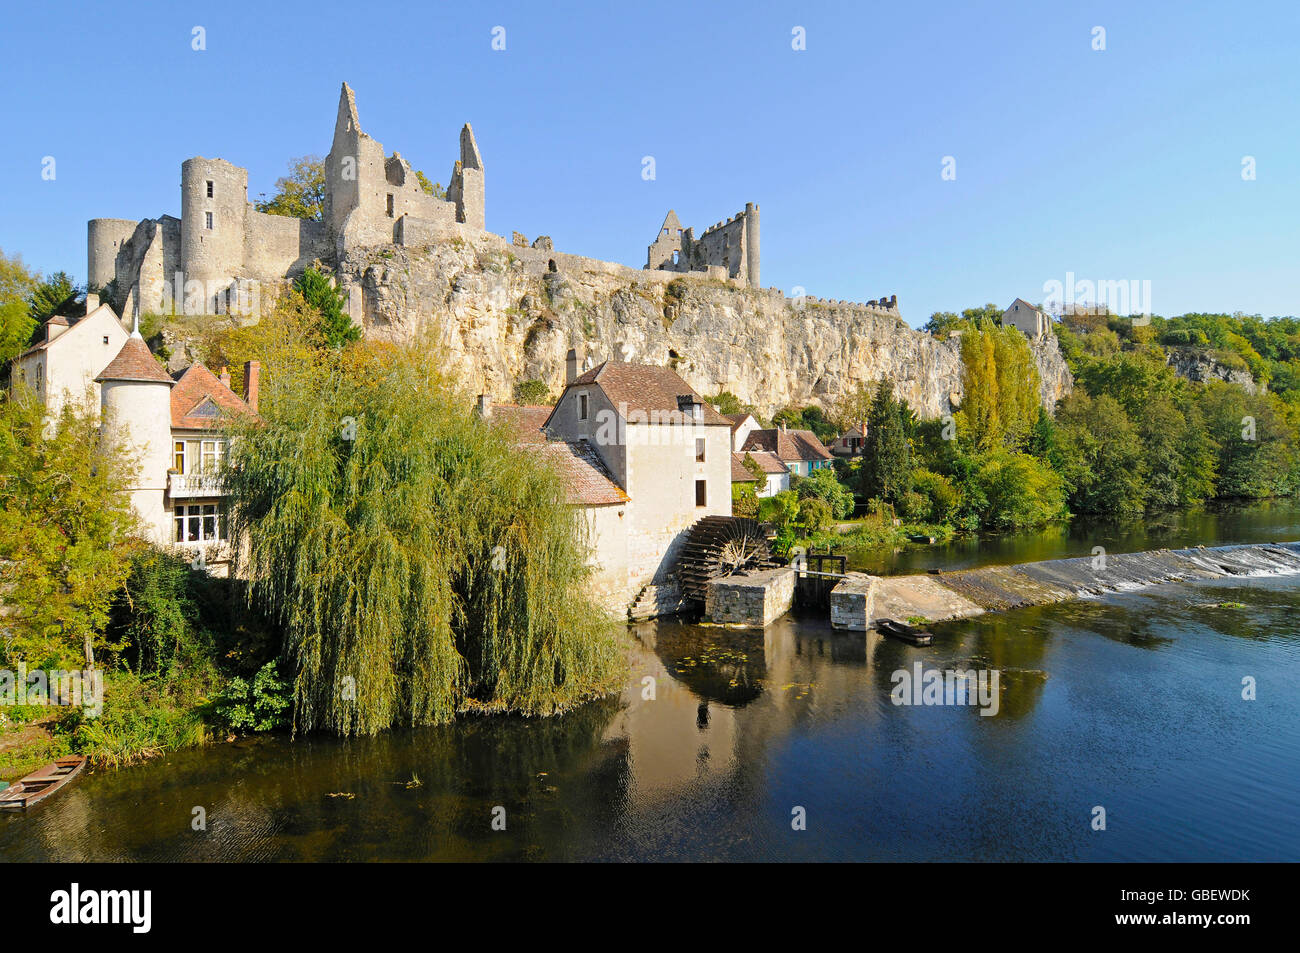 Château, moulin à eau, rivière Anglin, angles sur l'Anglin, Poitiers, Departement Vienne, Poitou-Charentes, France Banque D'Images